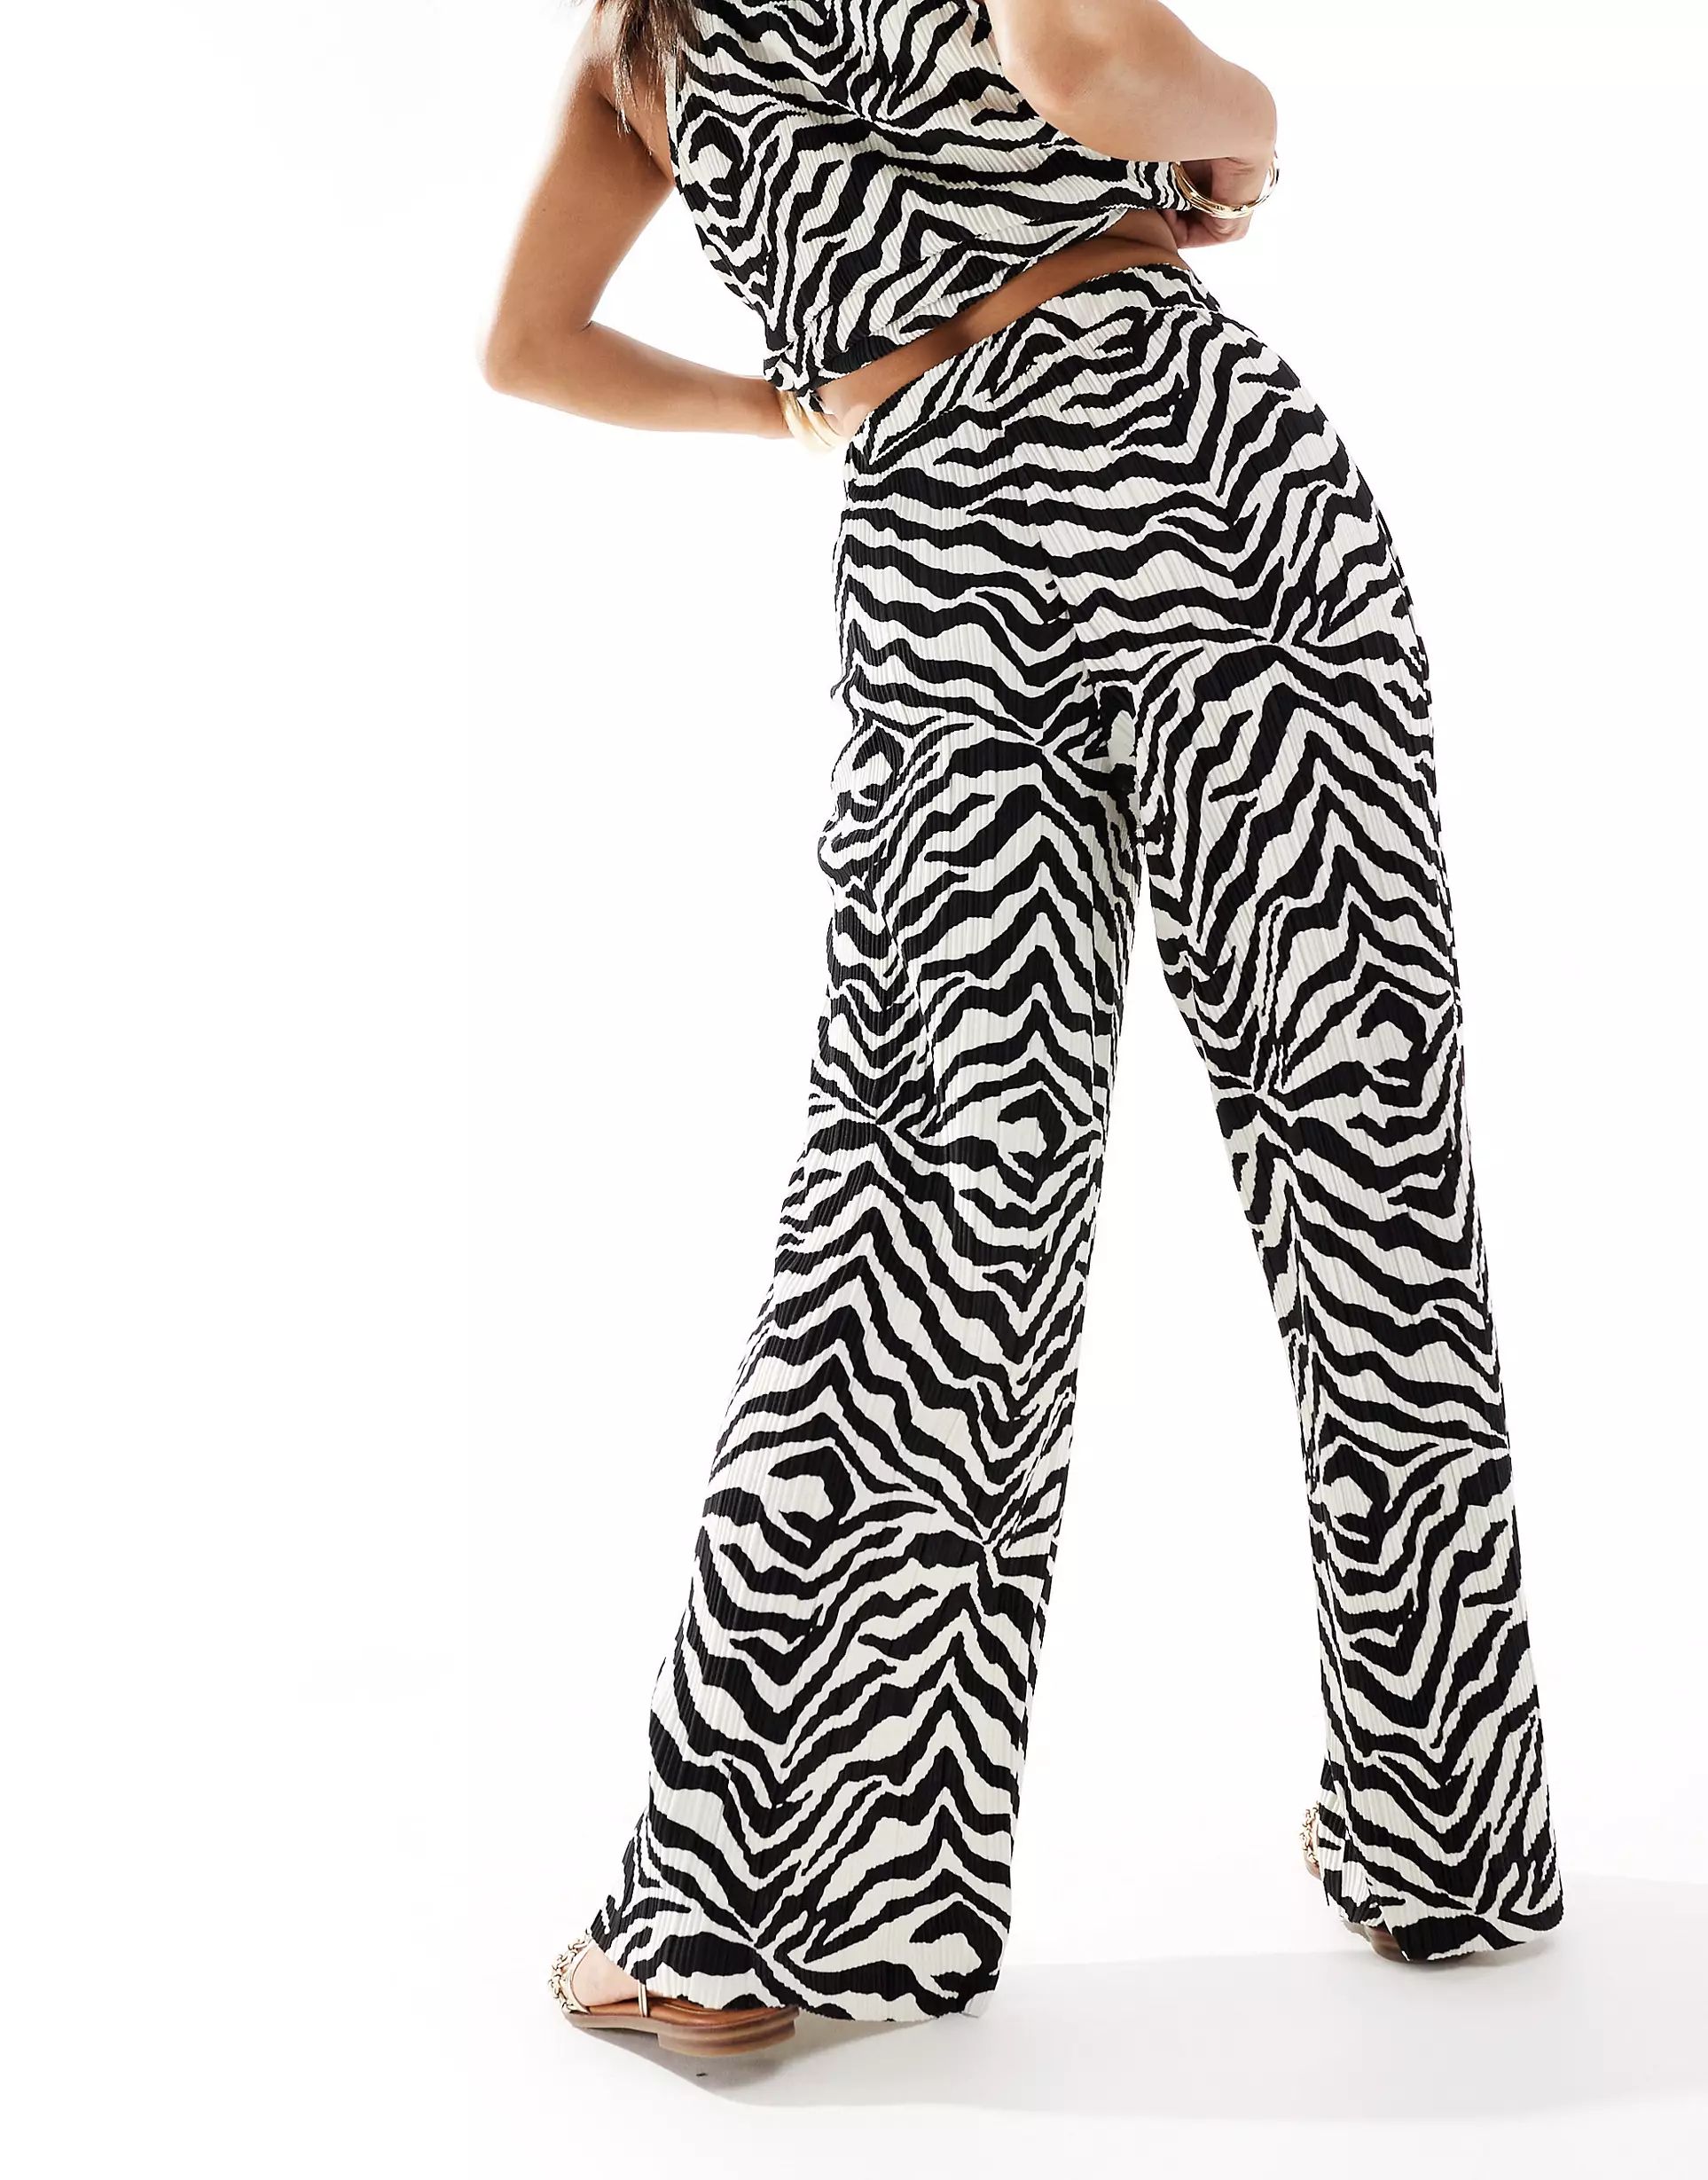 JDY Petite pull on wide leg plisse trouser co-ord in black & white zebra print | ASOS (Global)